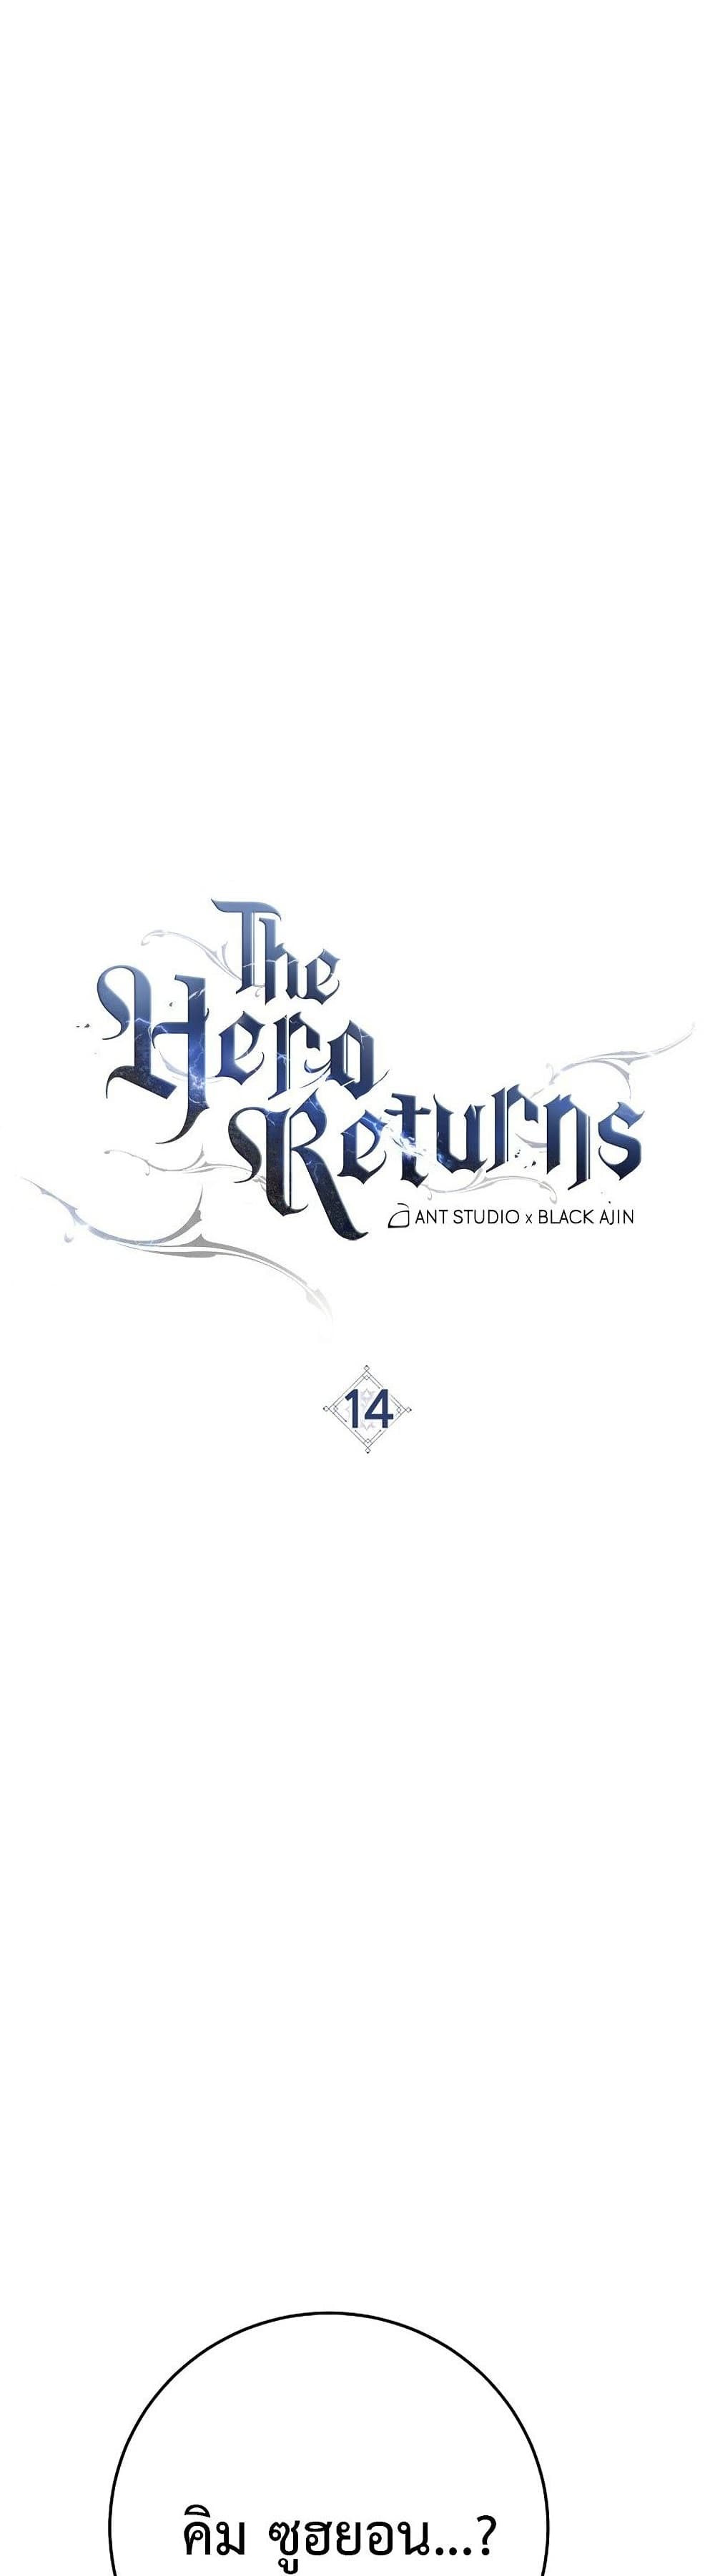 The Hero Returns 14-14